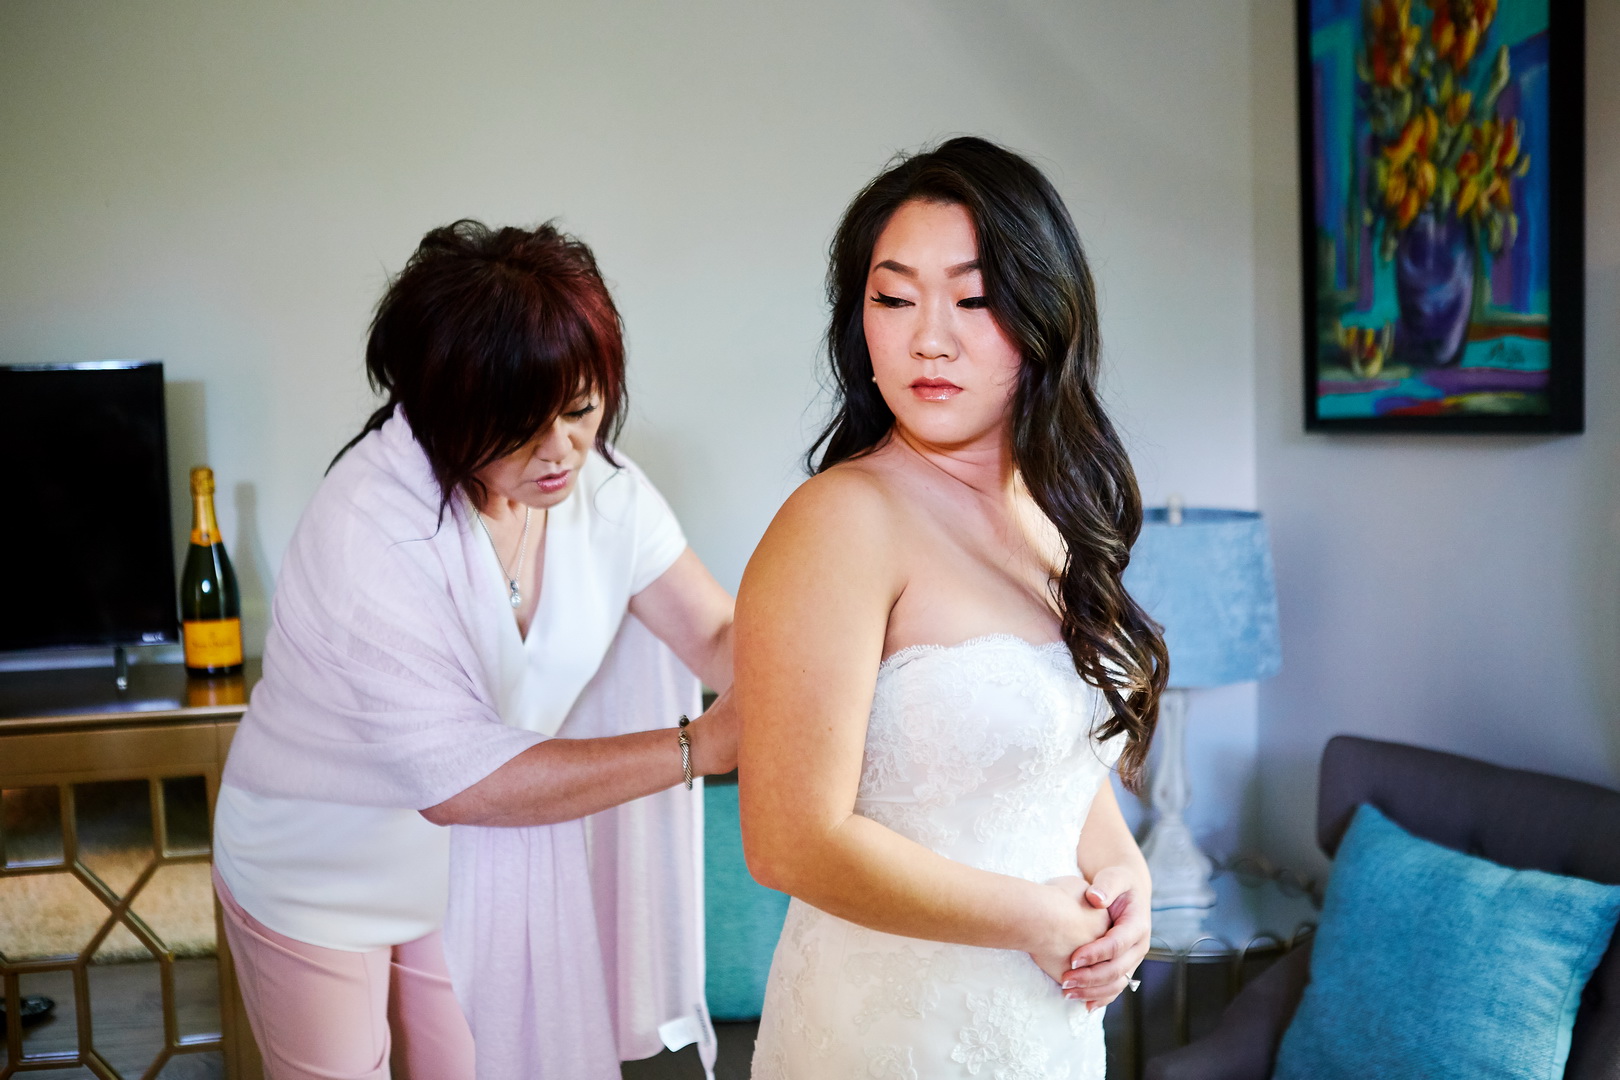 Mother of bride helps bride into wedding dress